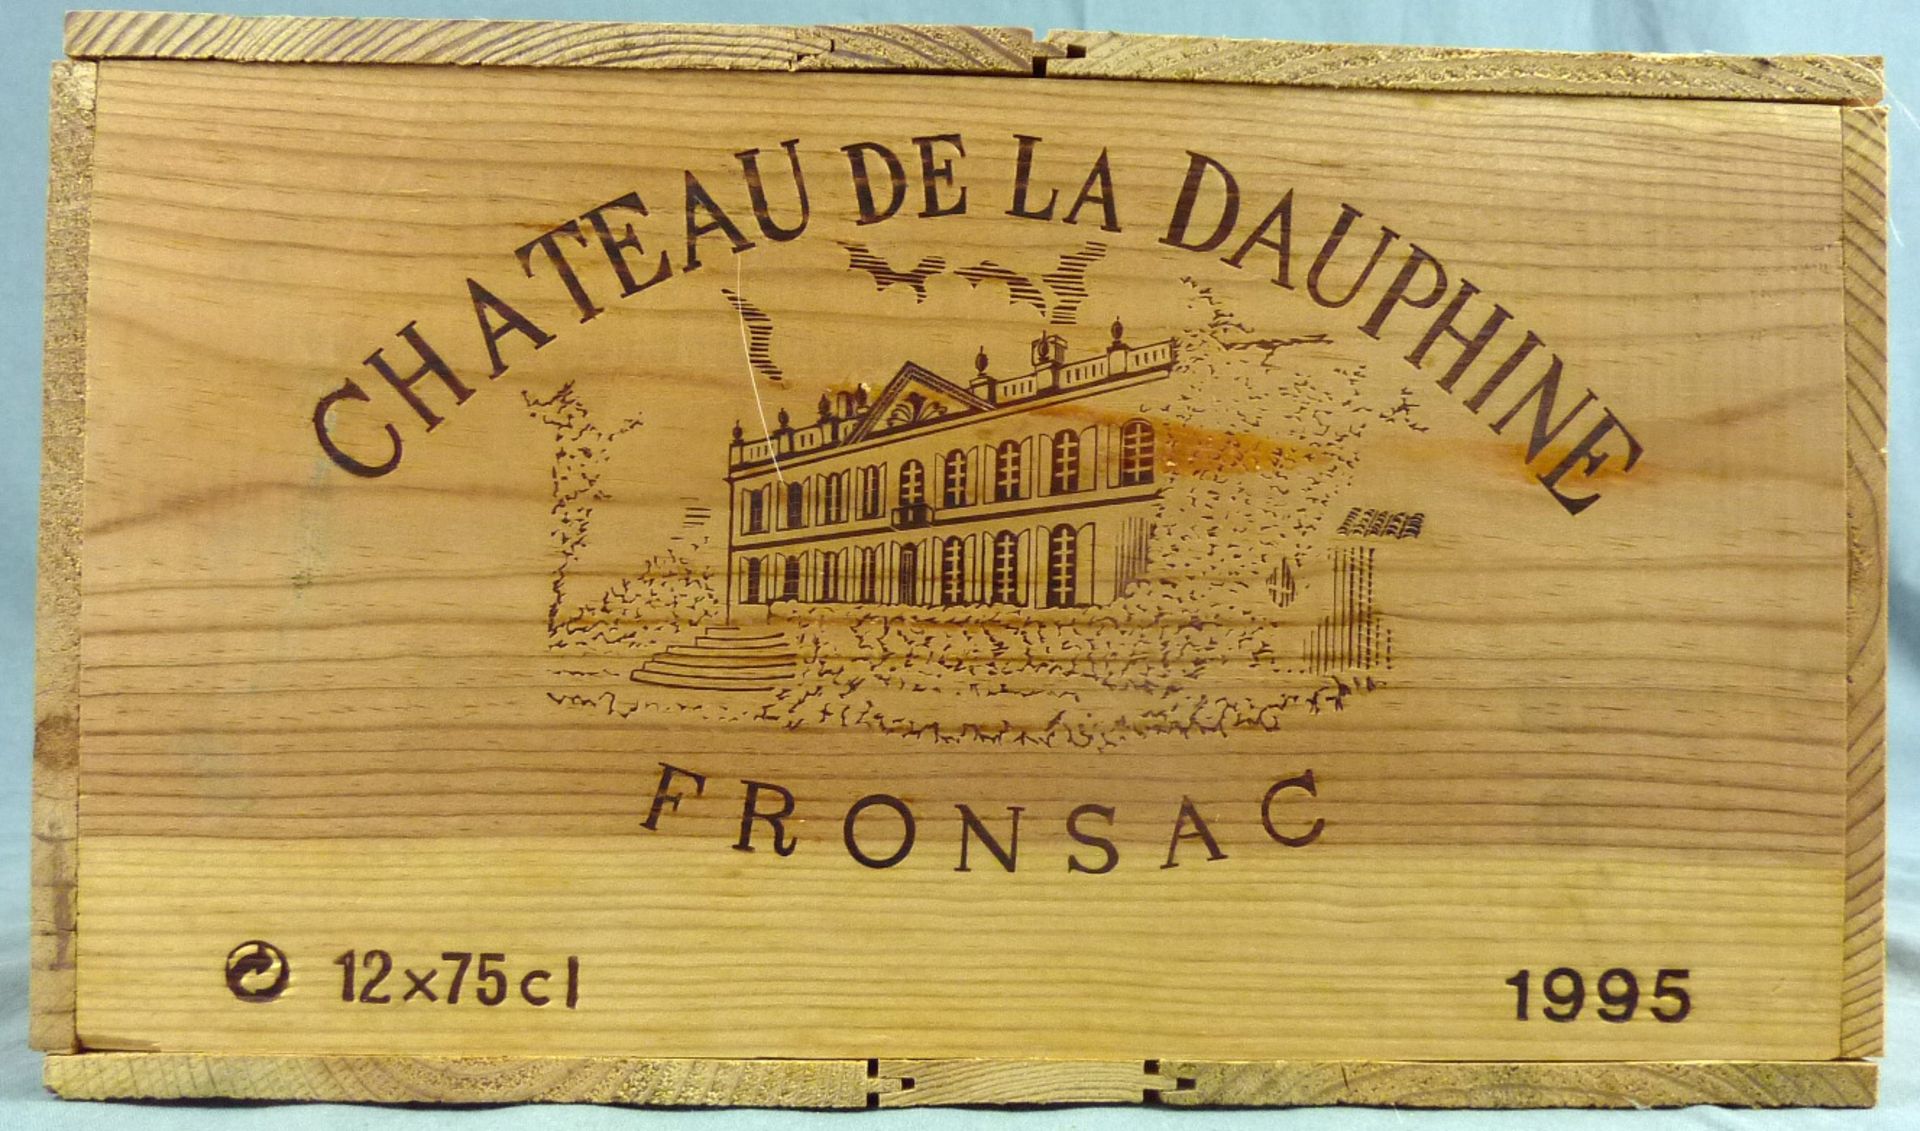 1995 Chateau de la Dauphine, Fronsac, France12 whole bottles. 12.5% Vol. 75 cl. OWC unopened. Mis